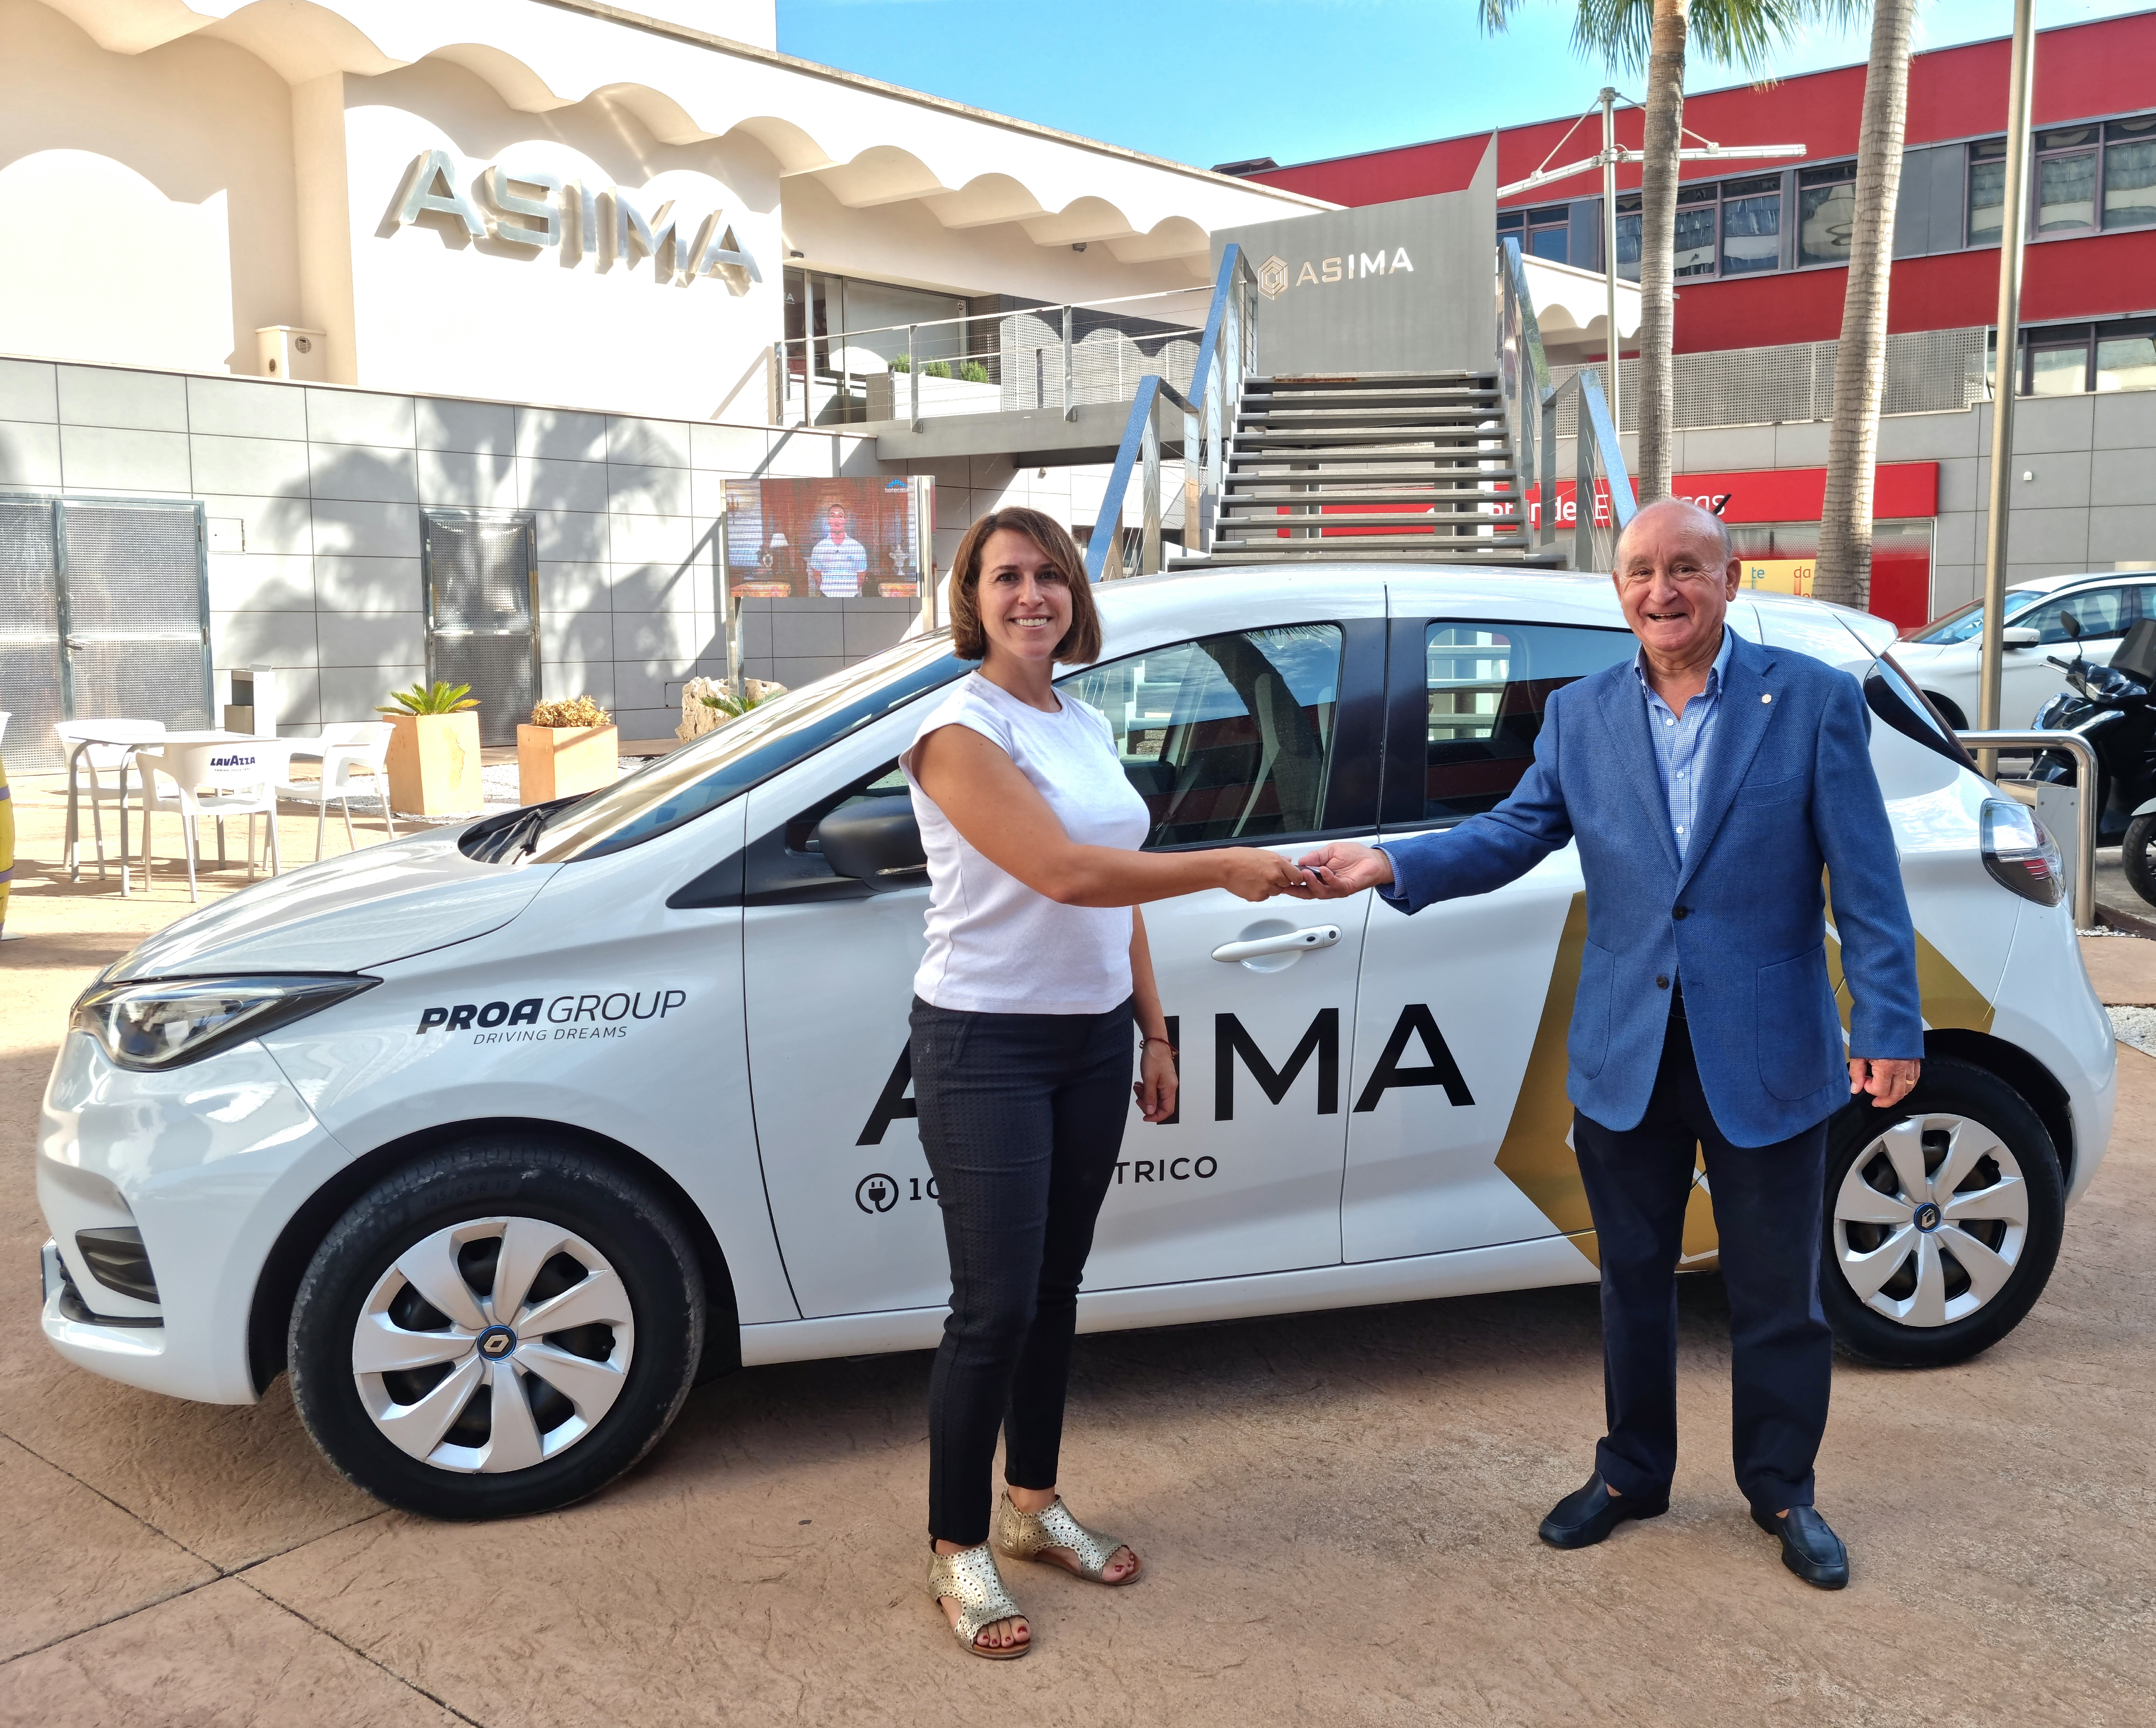 ASIMA firma un acuerdo con Proa Group para el uso de un vehículo eléctrico